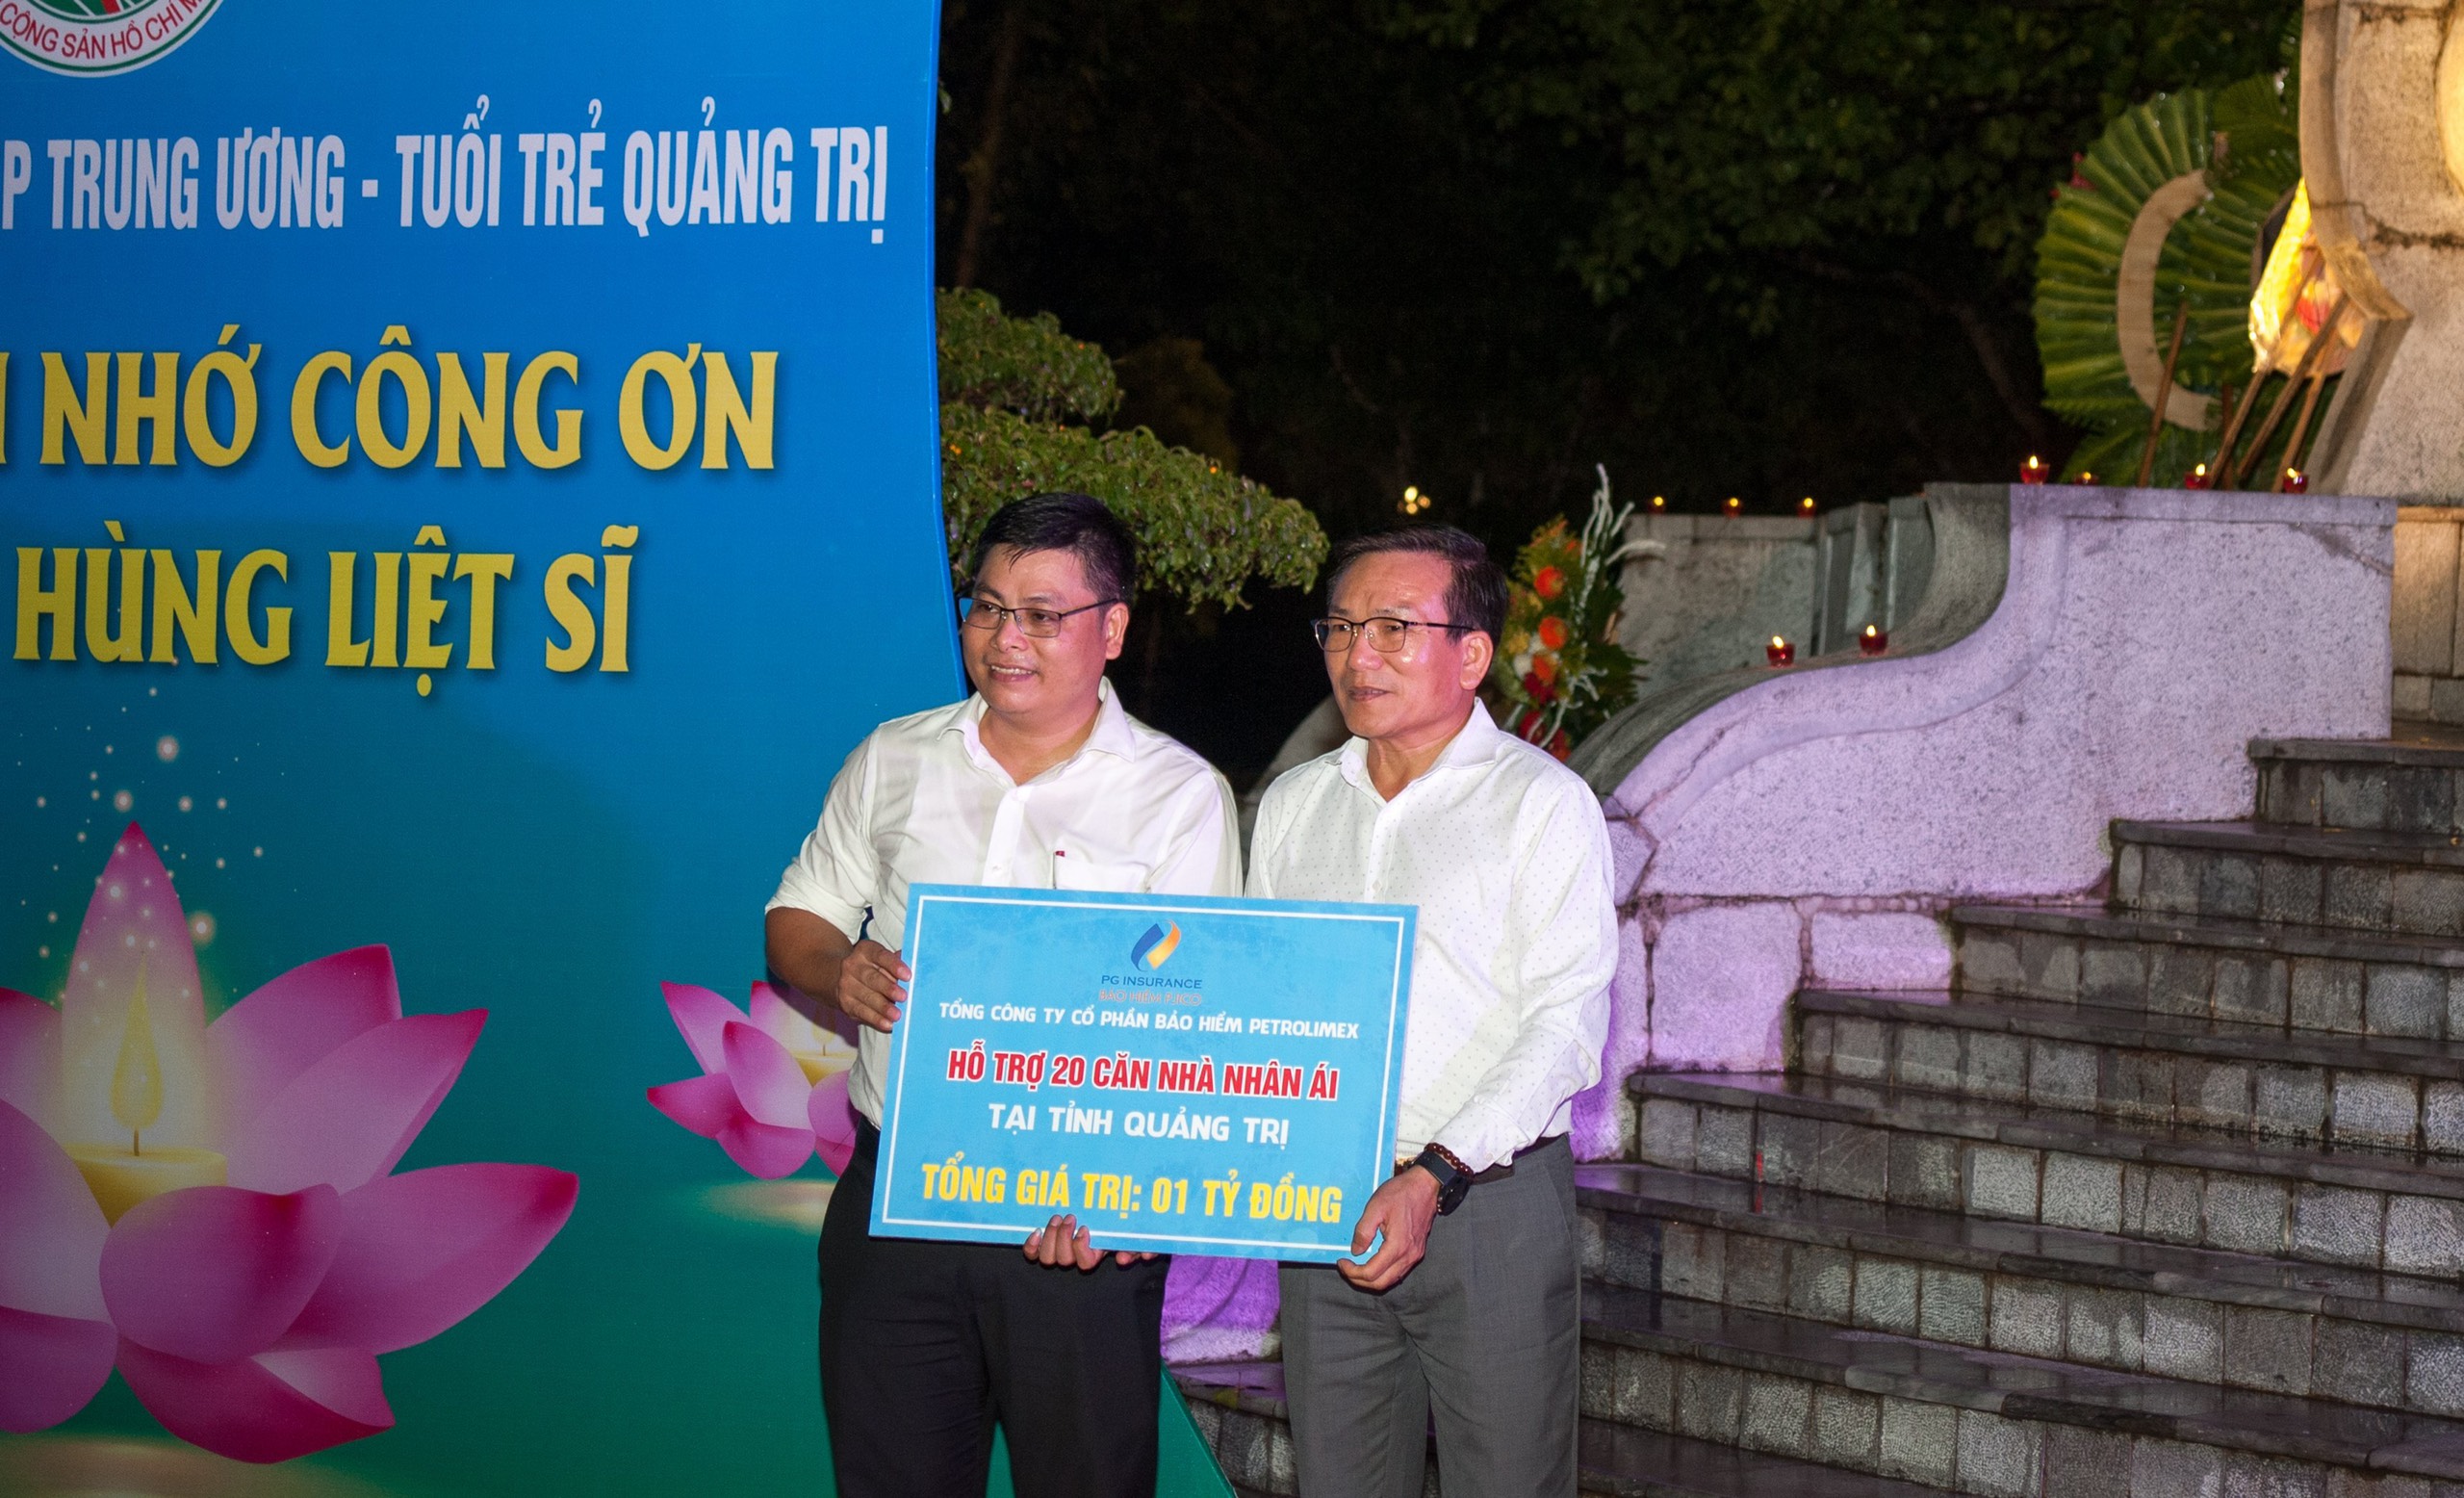 Đại diện lãnh đạo Tập đoàn Xăng dầu Việt Nam trao biển hỗ trợ nhà nhân ái cho đại diện Mặt trận Tổ quốc tỉnh Quảng Trị